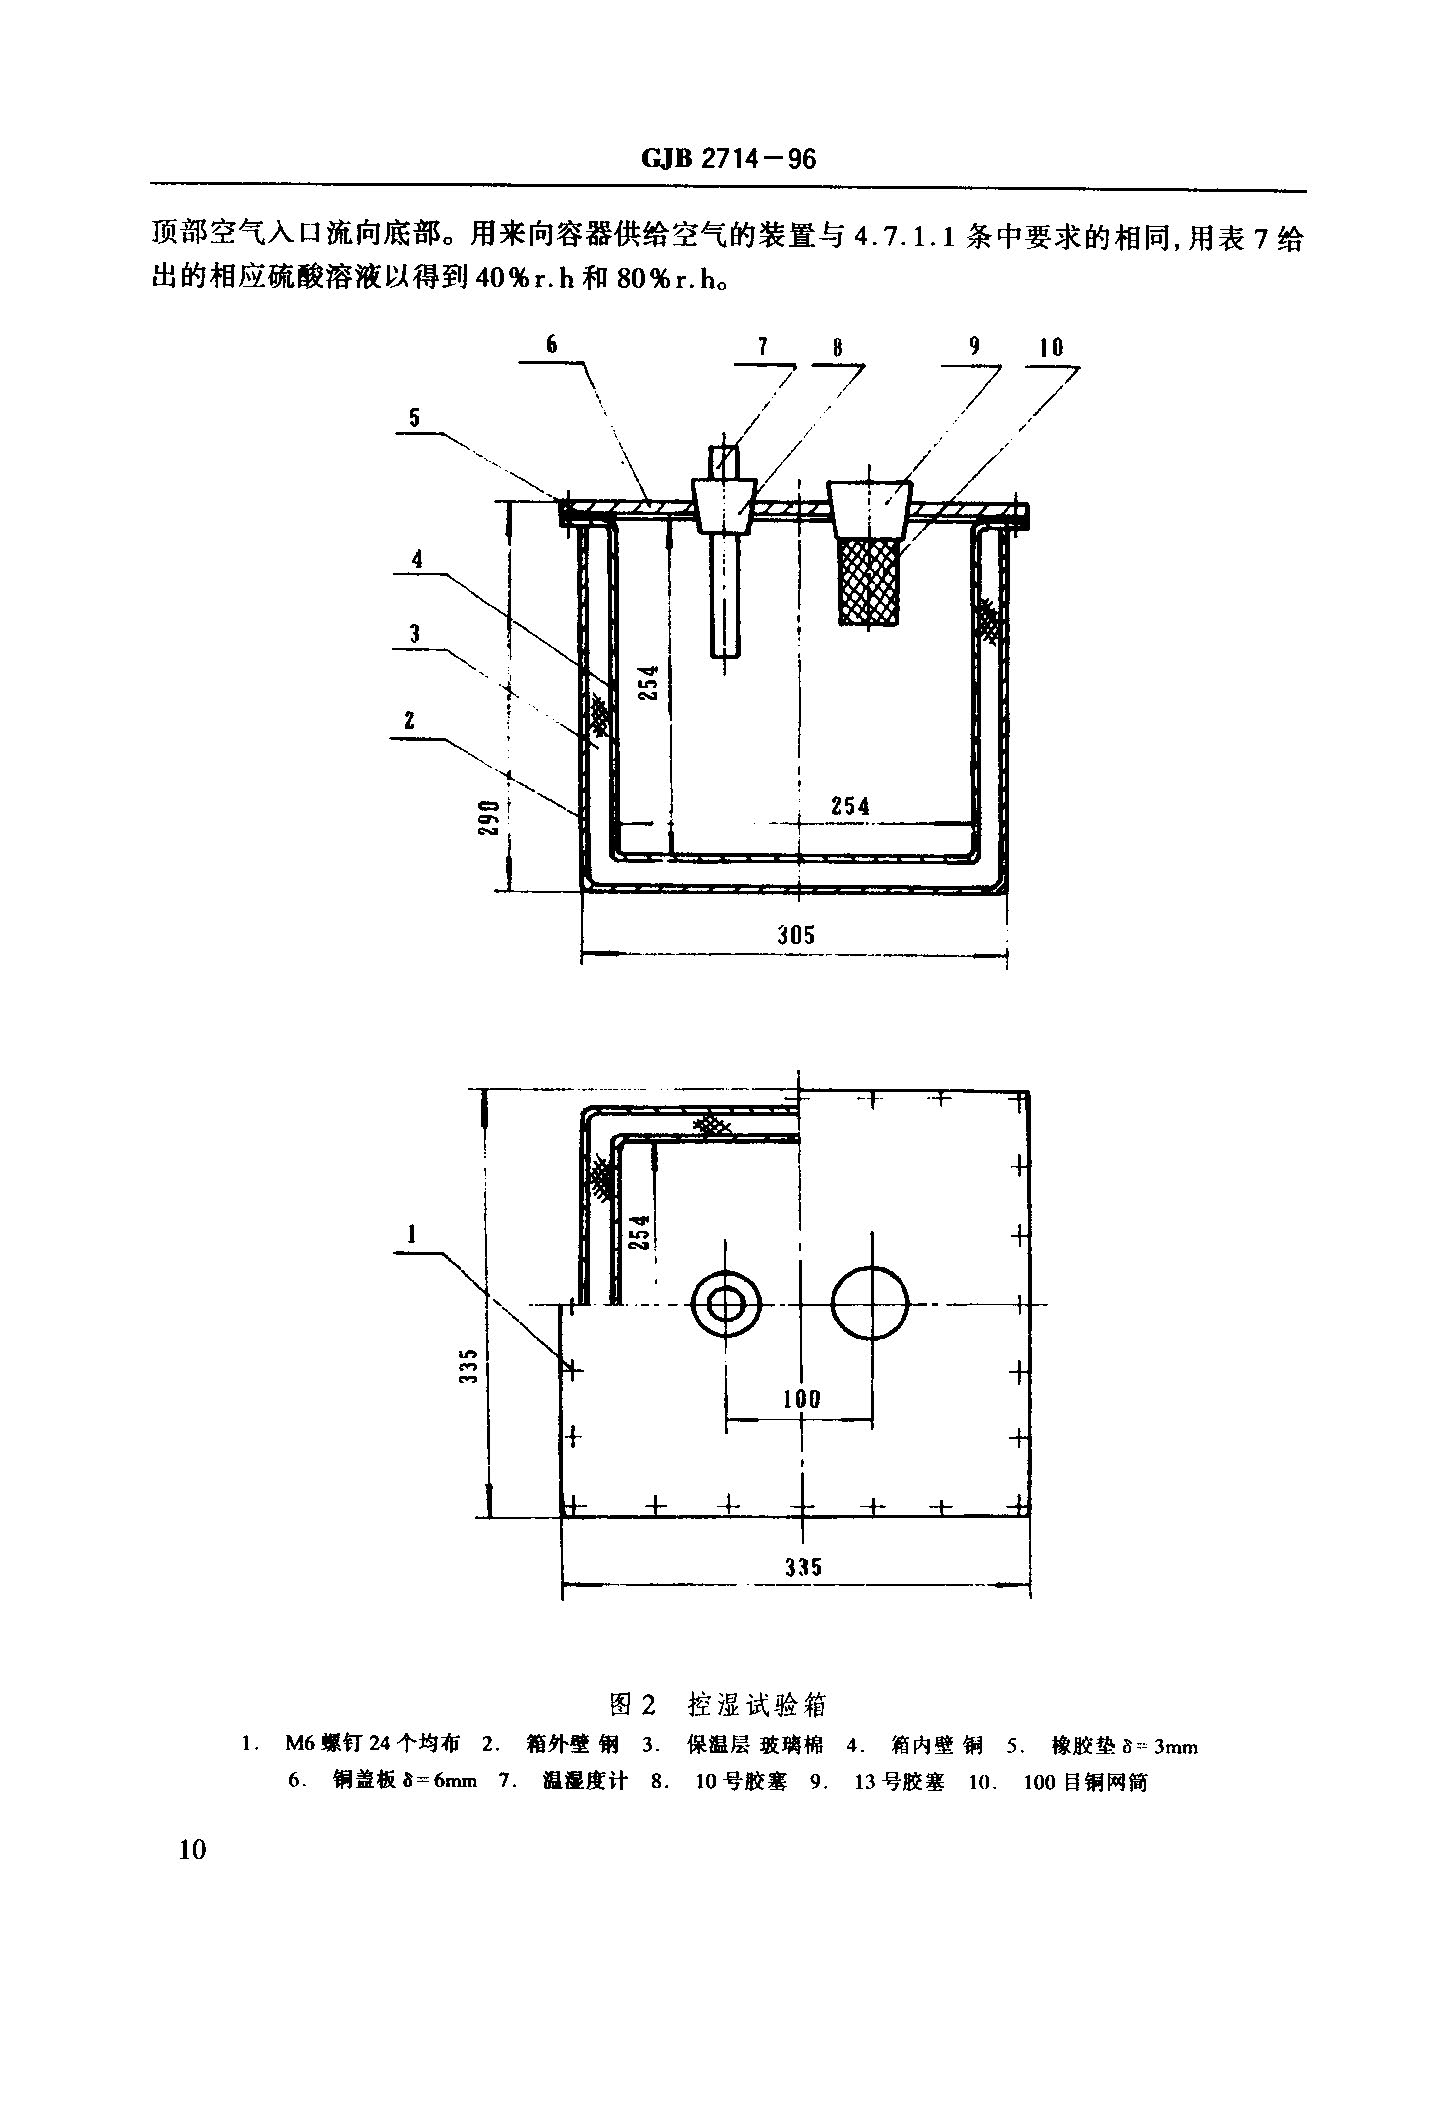 GJB 2714-1996 《包装用静态吸湿袋装活性干燥剂通用规范》